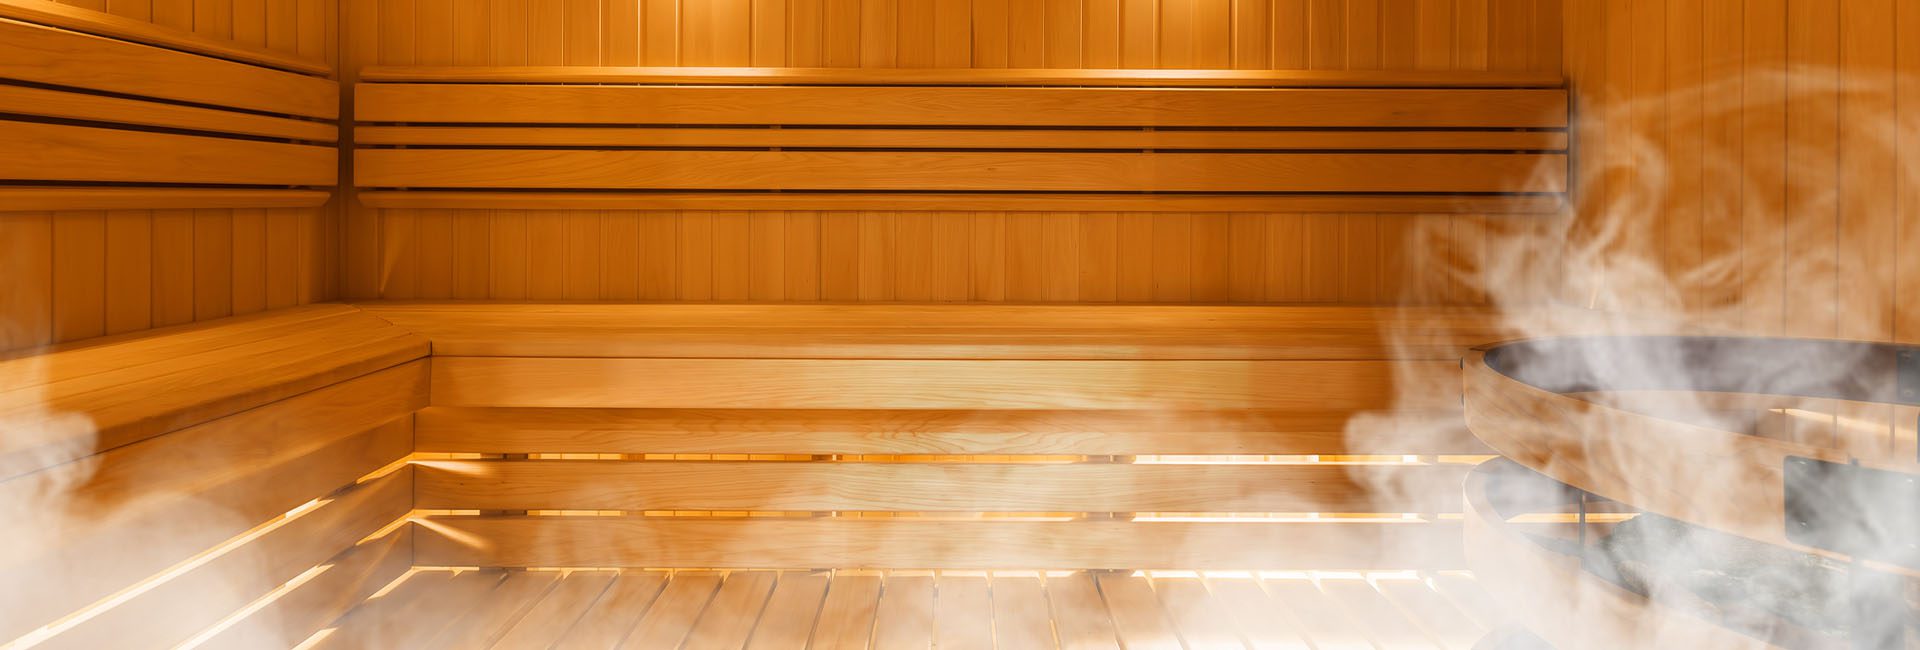 steaming sauna in a gym